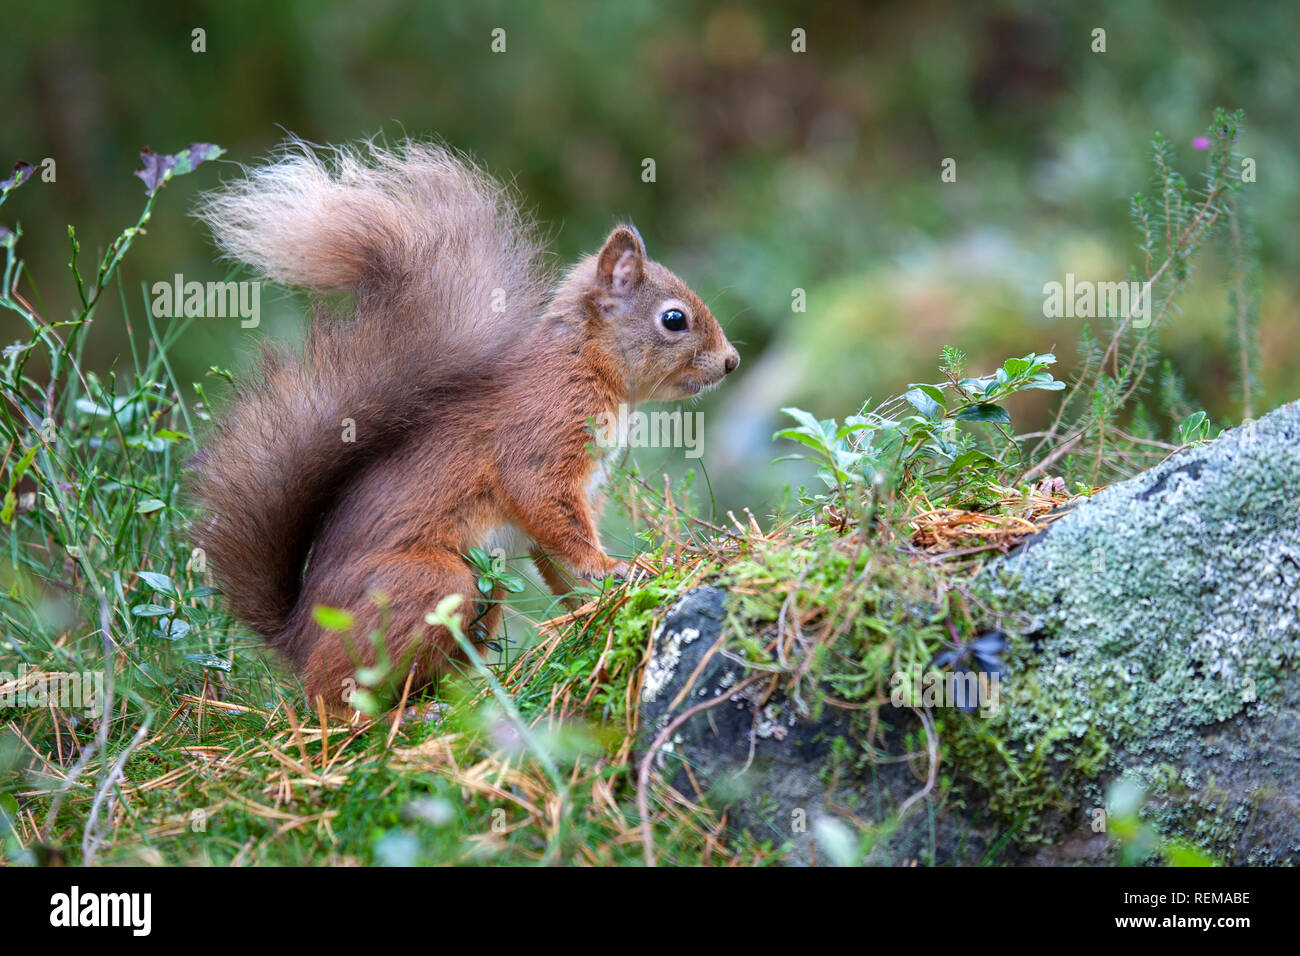 Bushy tailed Eichhörnchen Sciurus vulgaris schließen sich im Profil auf den Boden unter den Moosen und Wald pflanzen Stockfoto